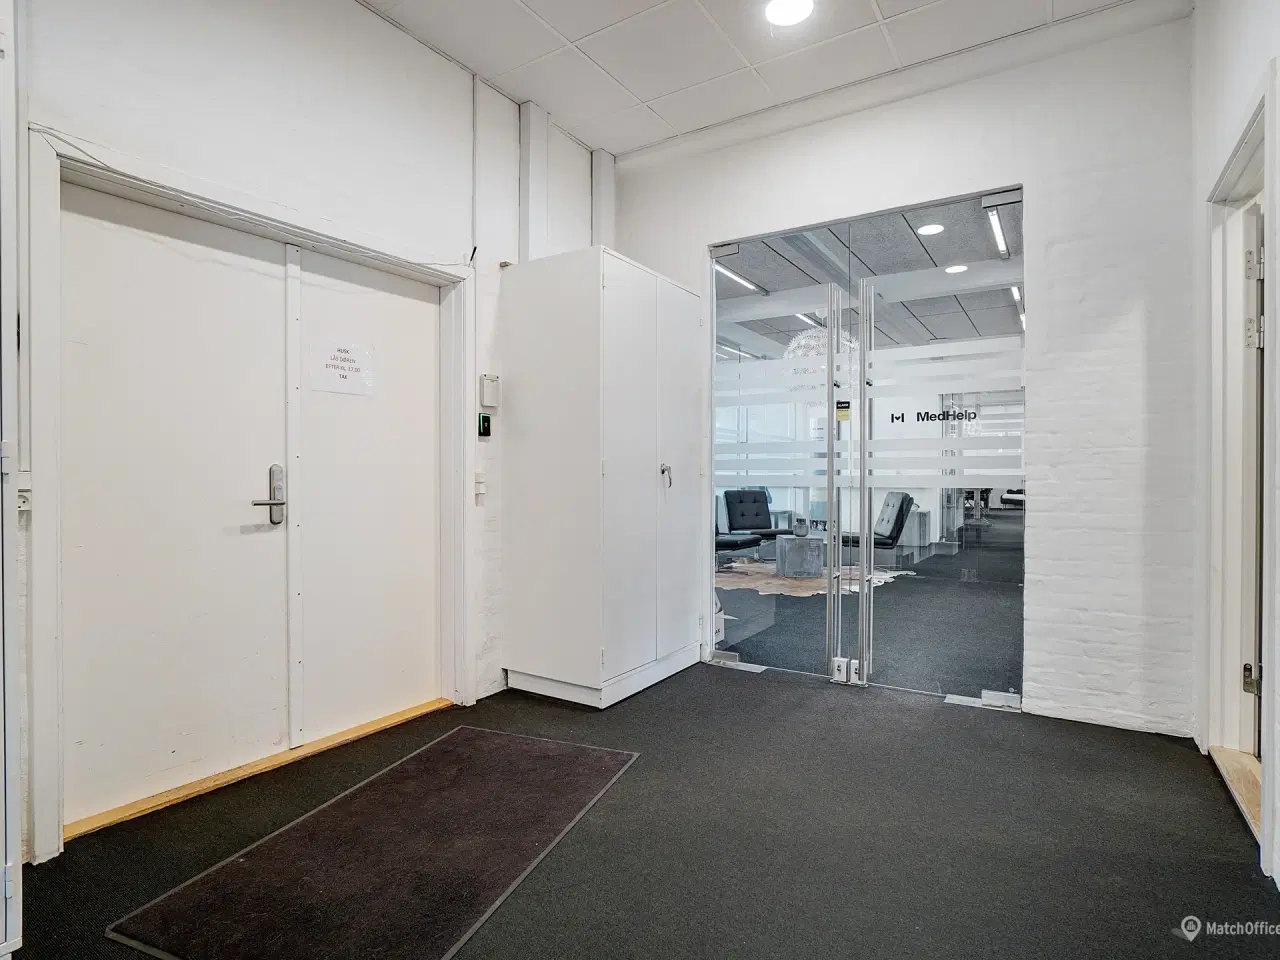 Billede 15 - Moderne kontorer/showroom med fleksible glasinddelinger